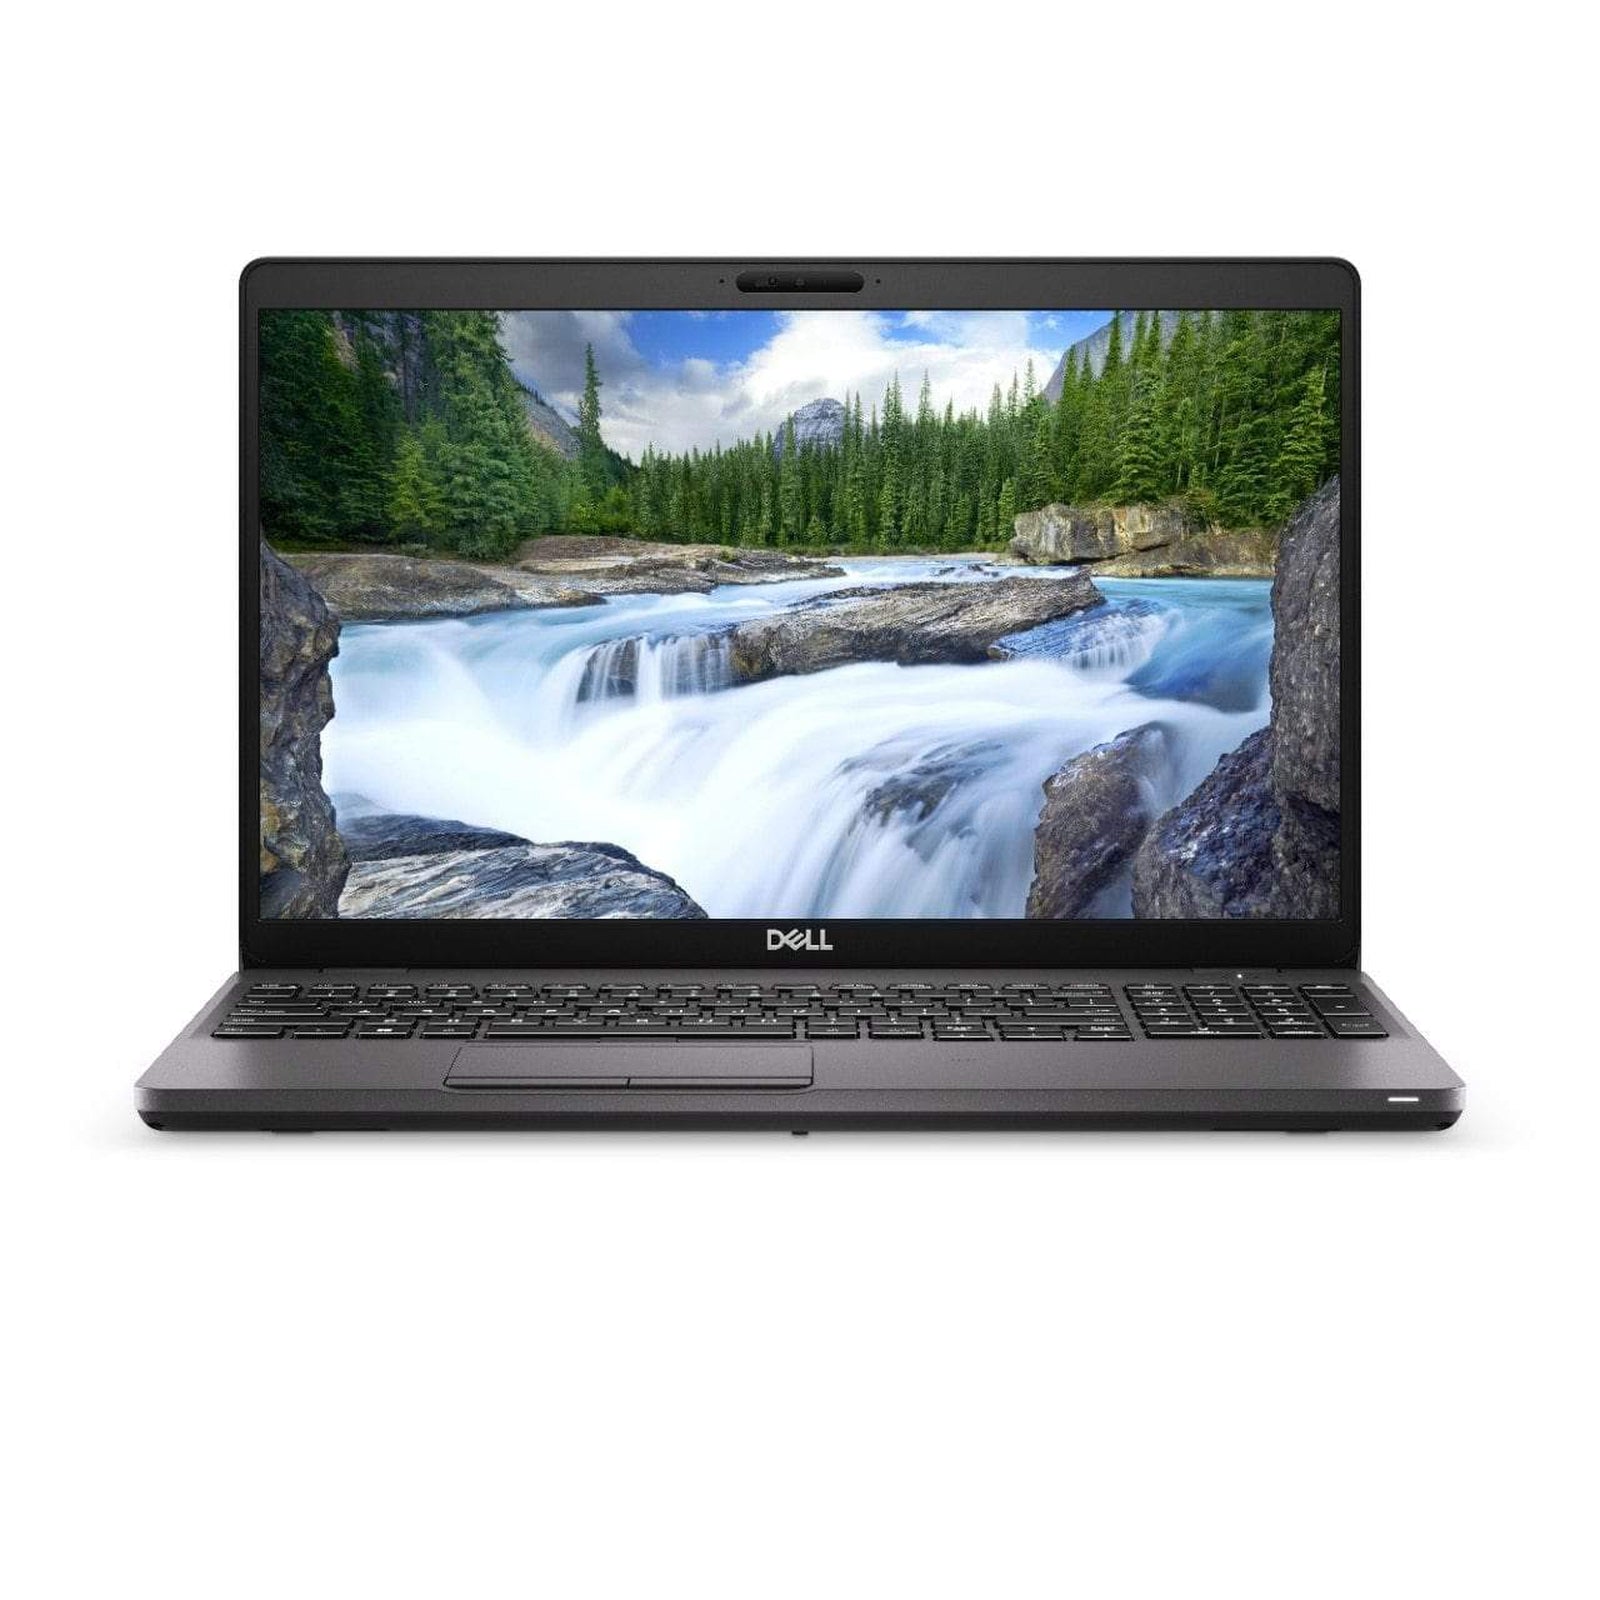 BSB-GCYCGLXI7K4B5IDC-REF-REF-LAP-DL 2019 Dell Latitude 5500 Laptop 15.6" - i7 - i7-8665U - Quad Core 4.8Ghz - 256GB SSD - 8GB RAM - 1920x1080 FHD - Windows 10 Pro Black